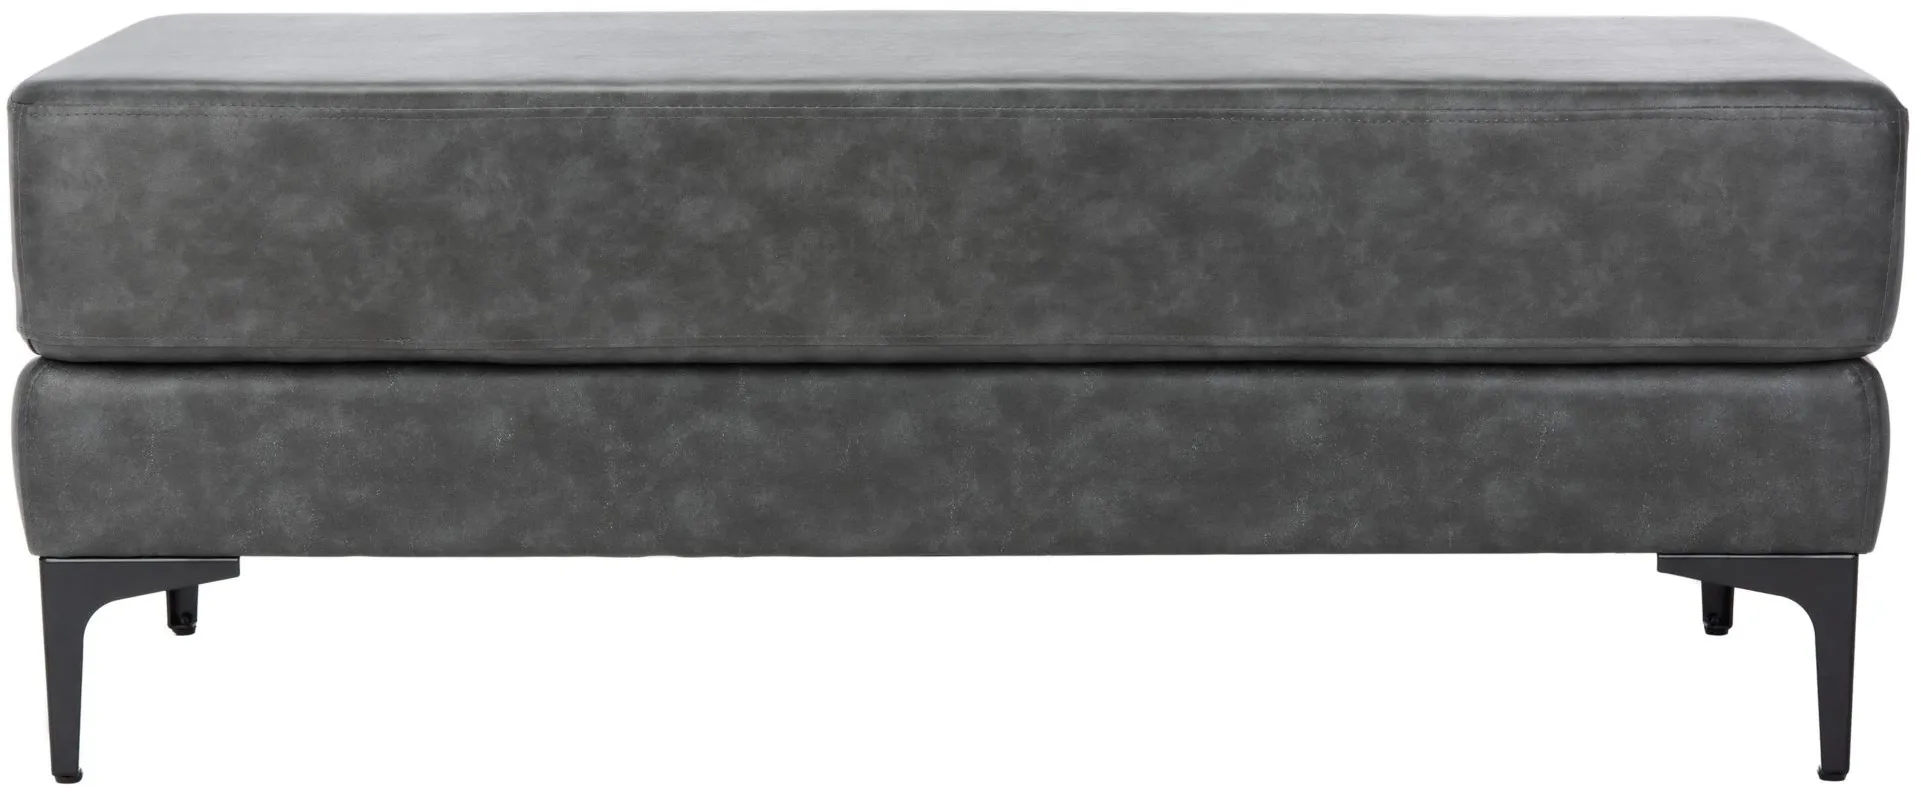 Ealing Rectangular Bench in Gray / Black by Safavieh